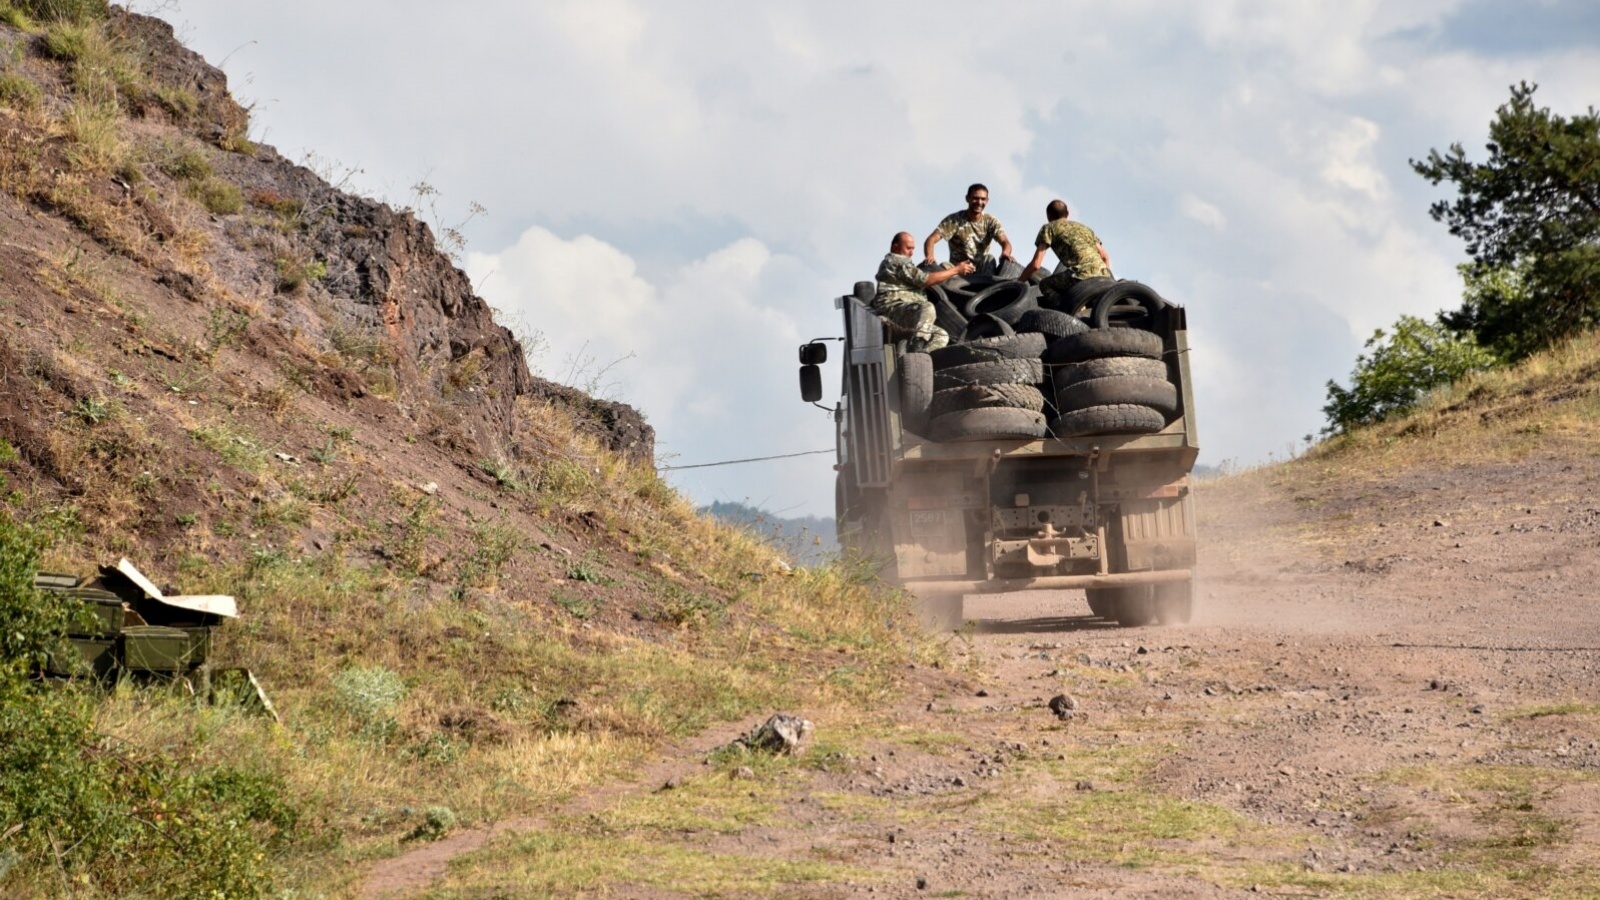 جنود أرمن ينقلون الإطارات المستخدمة في الجزء الخلفي من شاحنة لتحصين مواقعهم على الحدود الأرمنية الأذربيجانية